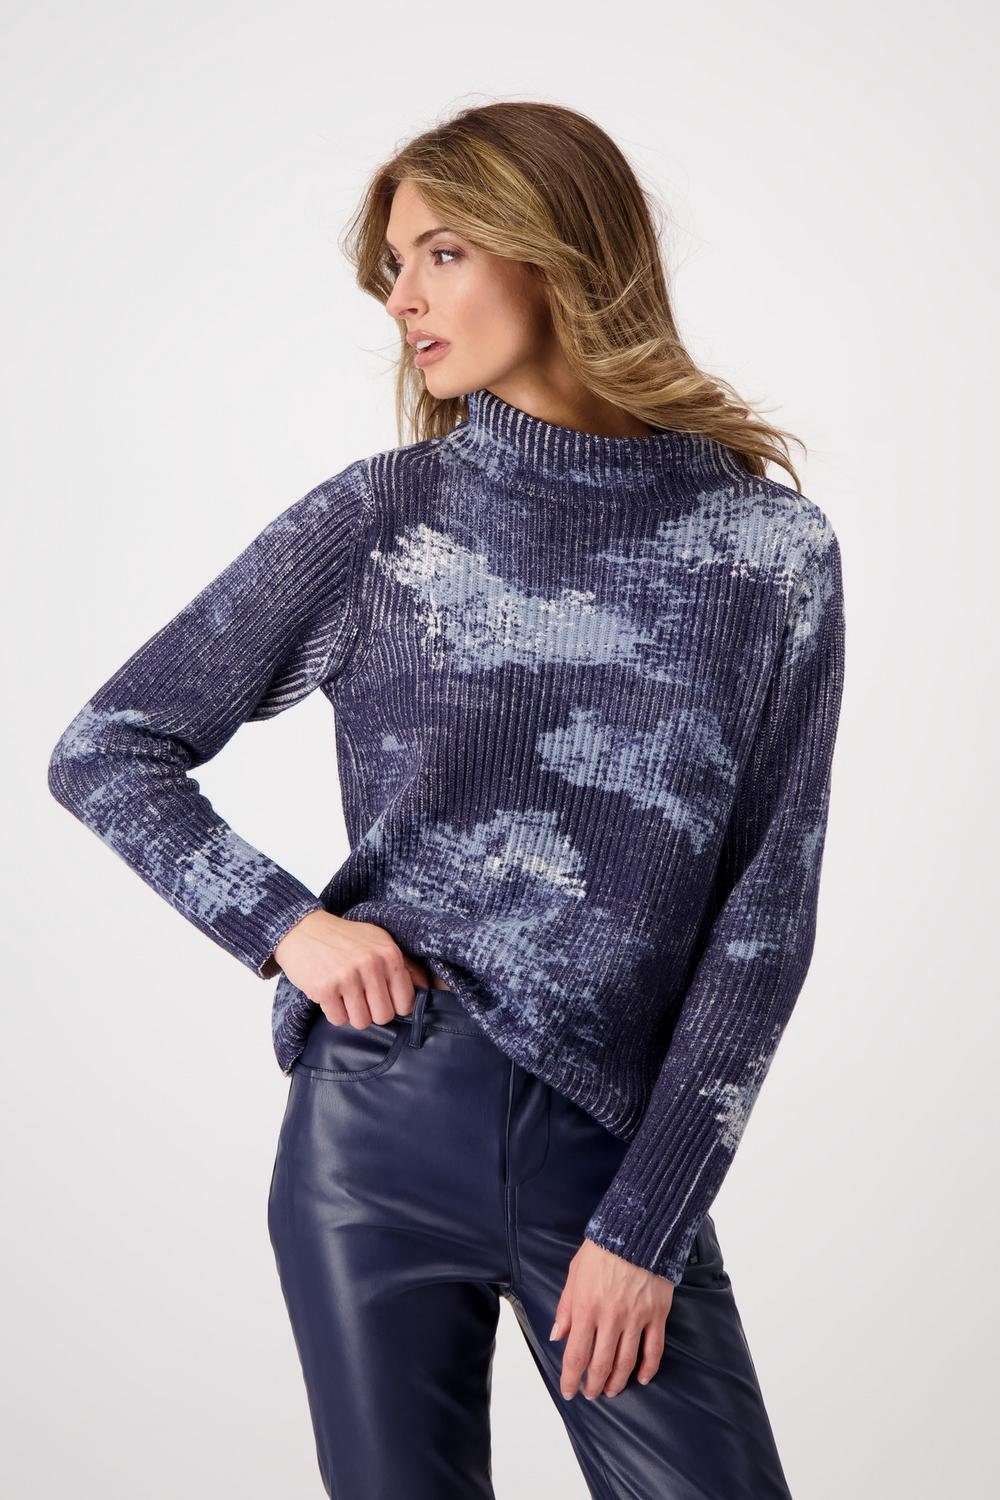 Свитер с круглым вырезом, пуловер с облачным принтом и жемчужным узором